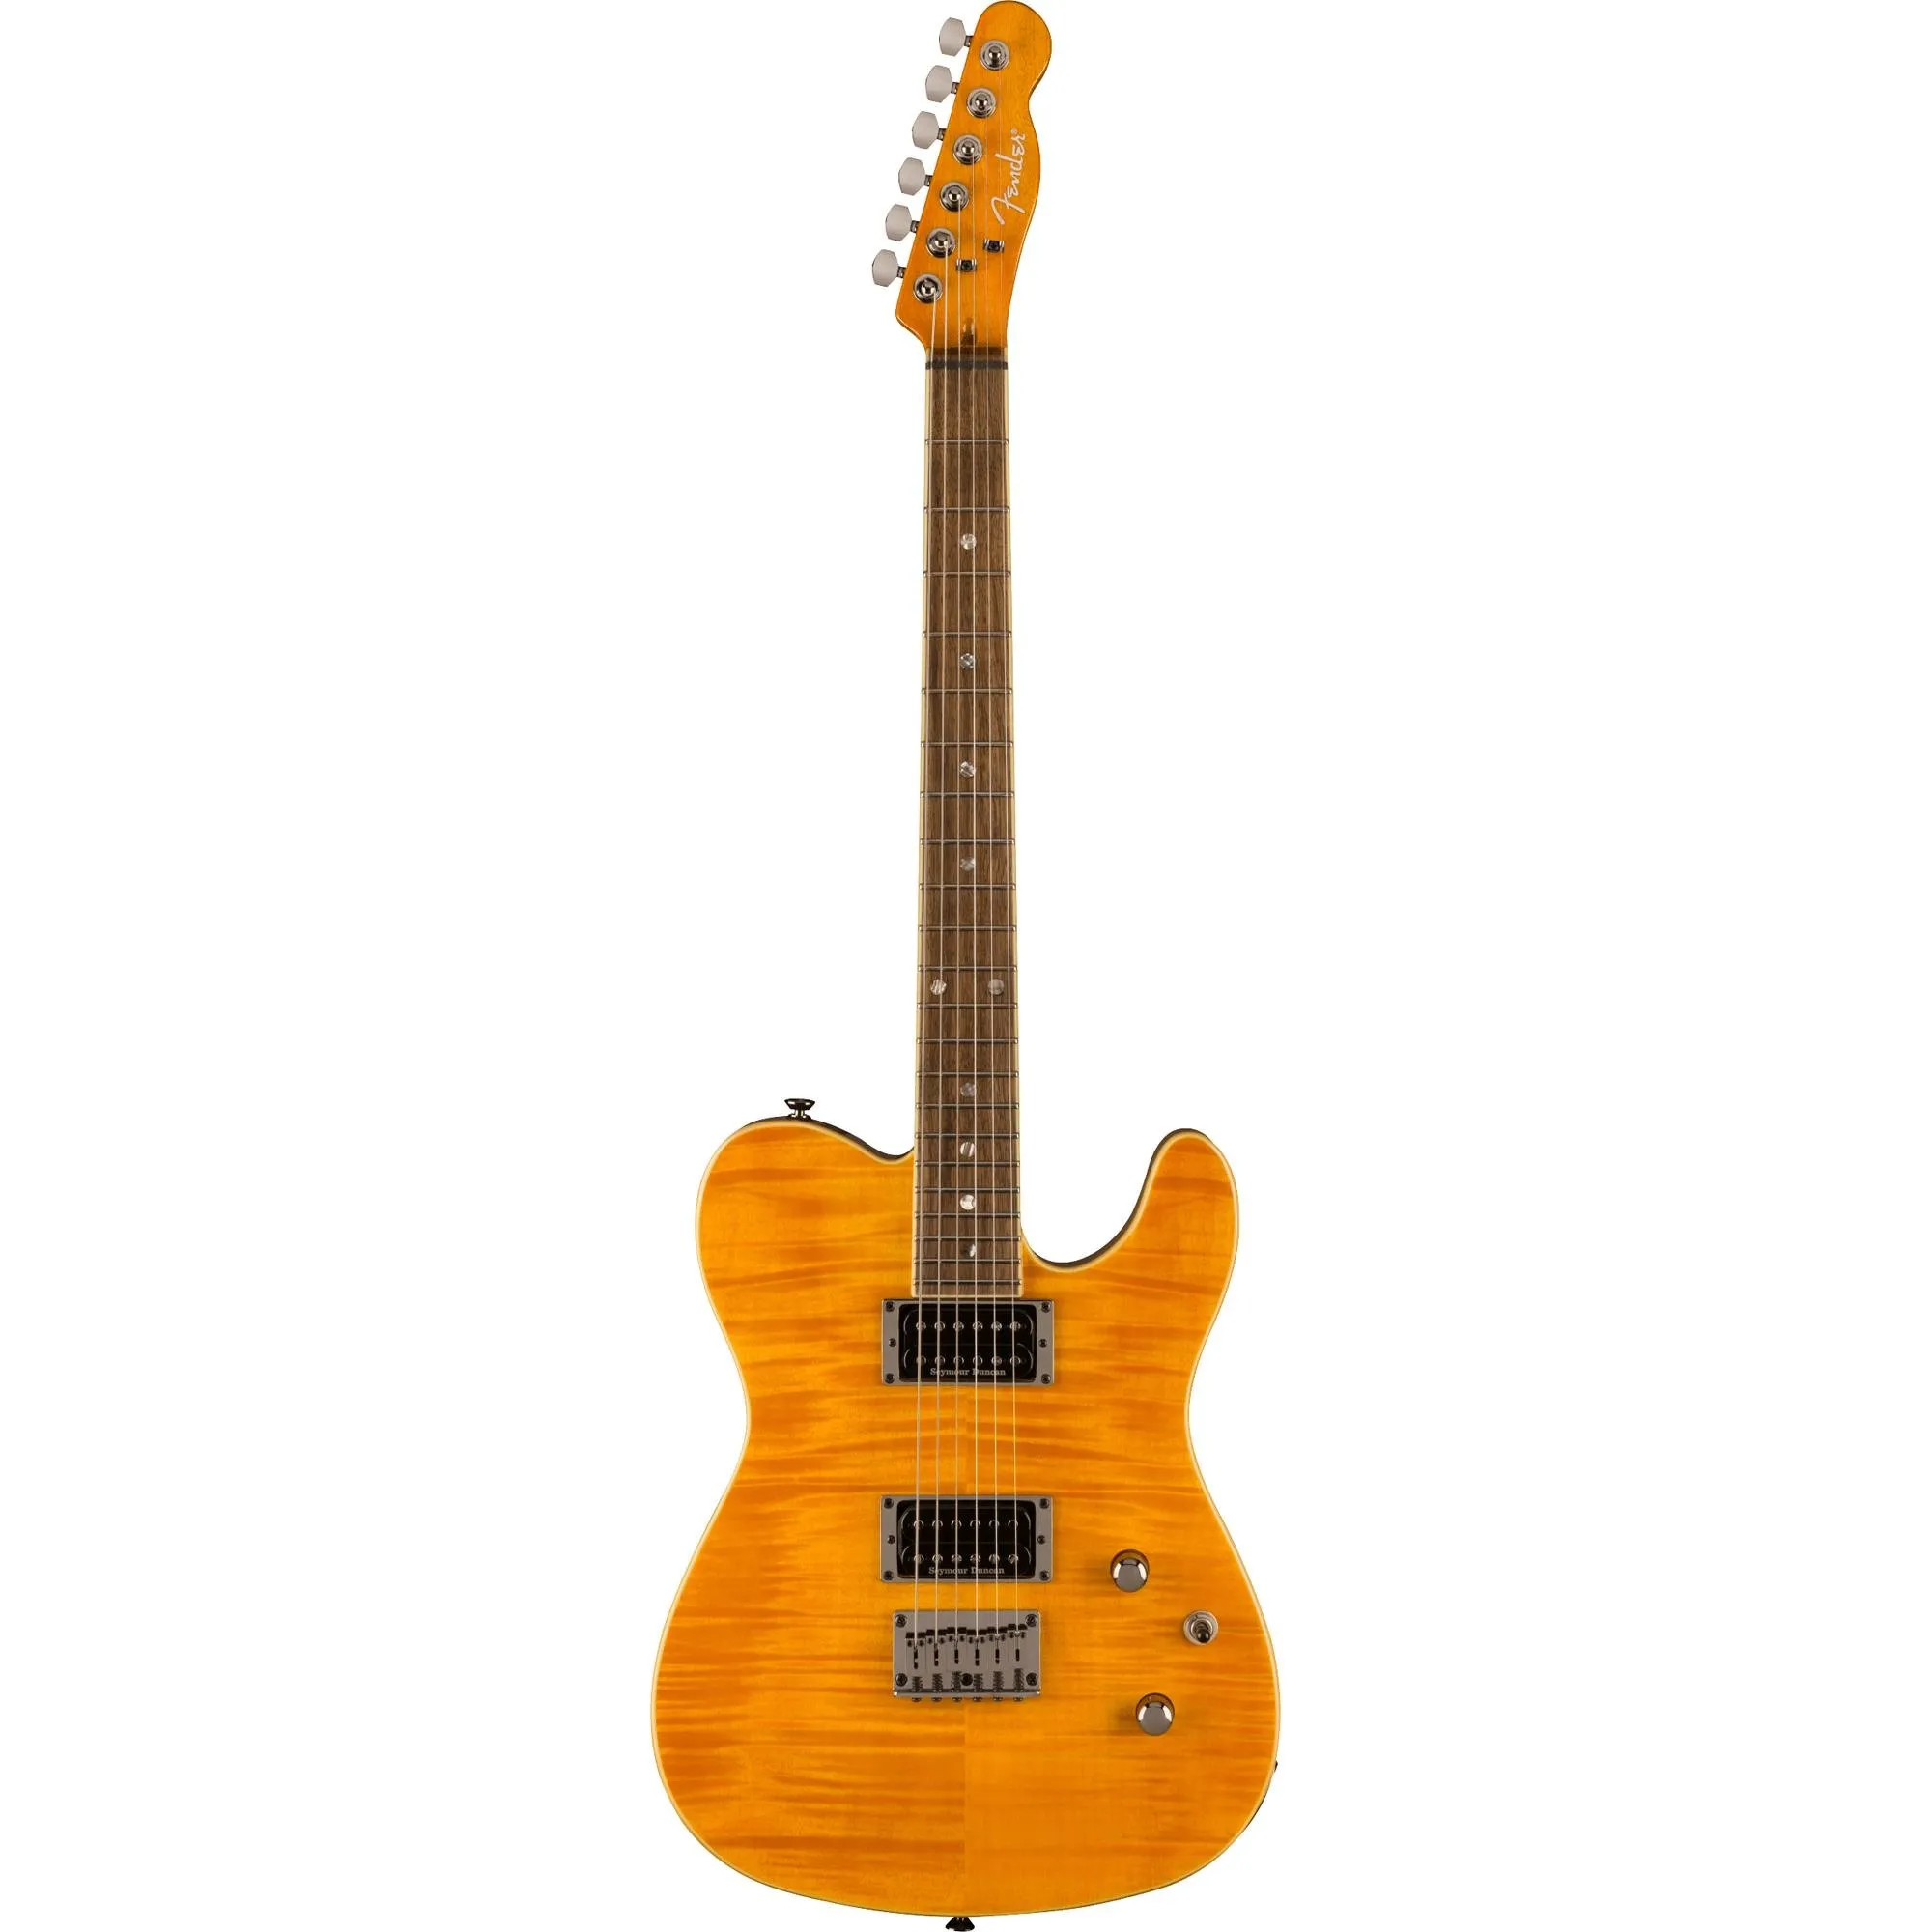 Guitarra Fender Telecaster Special Edition Custom FMT HH Amber por 8.999,99 à vista no boleto/pix ou parcele em até 12x sem juros. Compre na loja Mundomax!